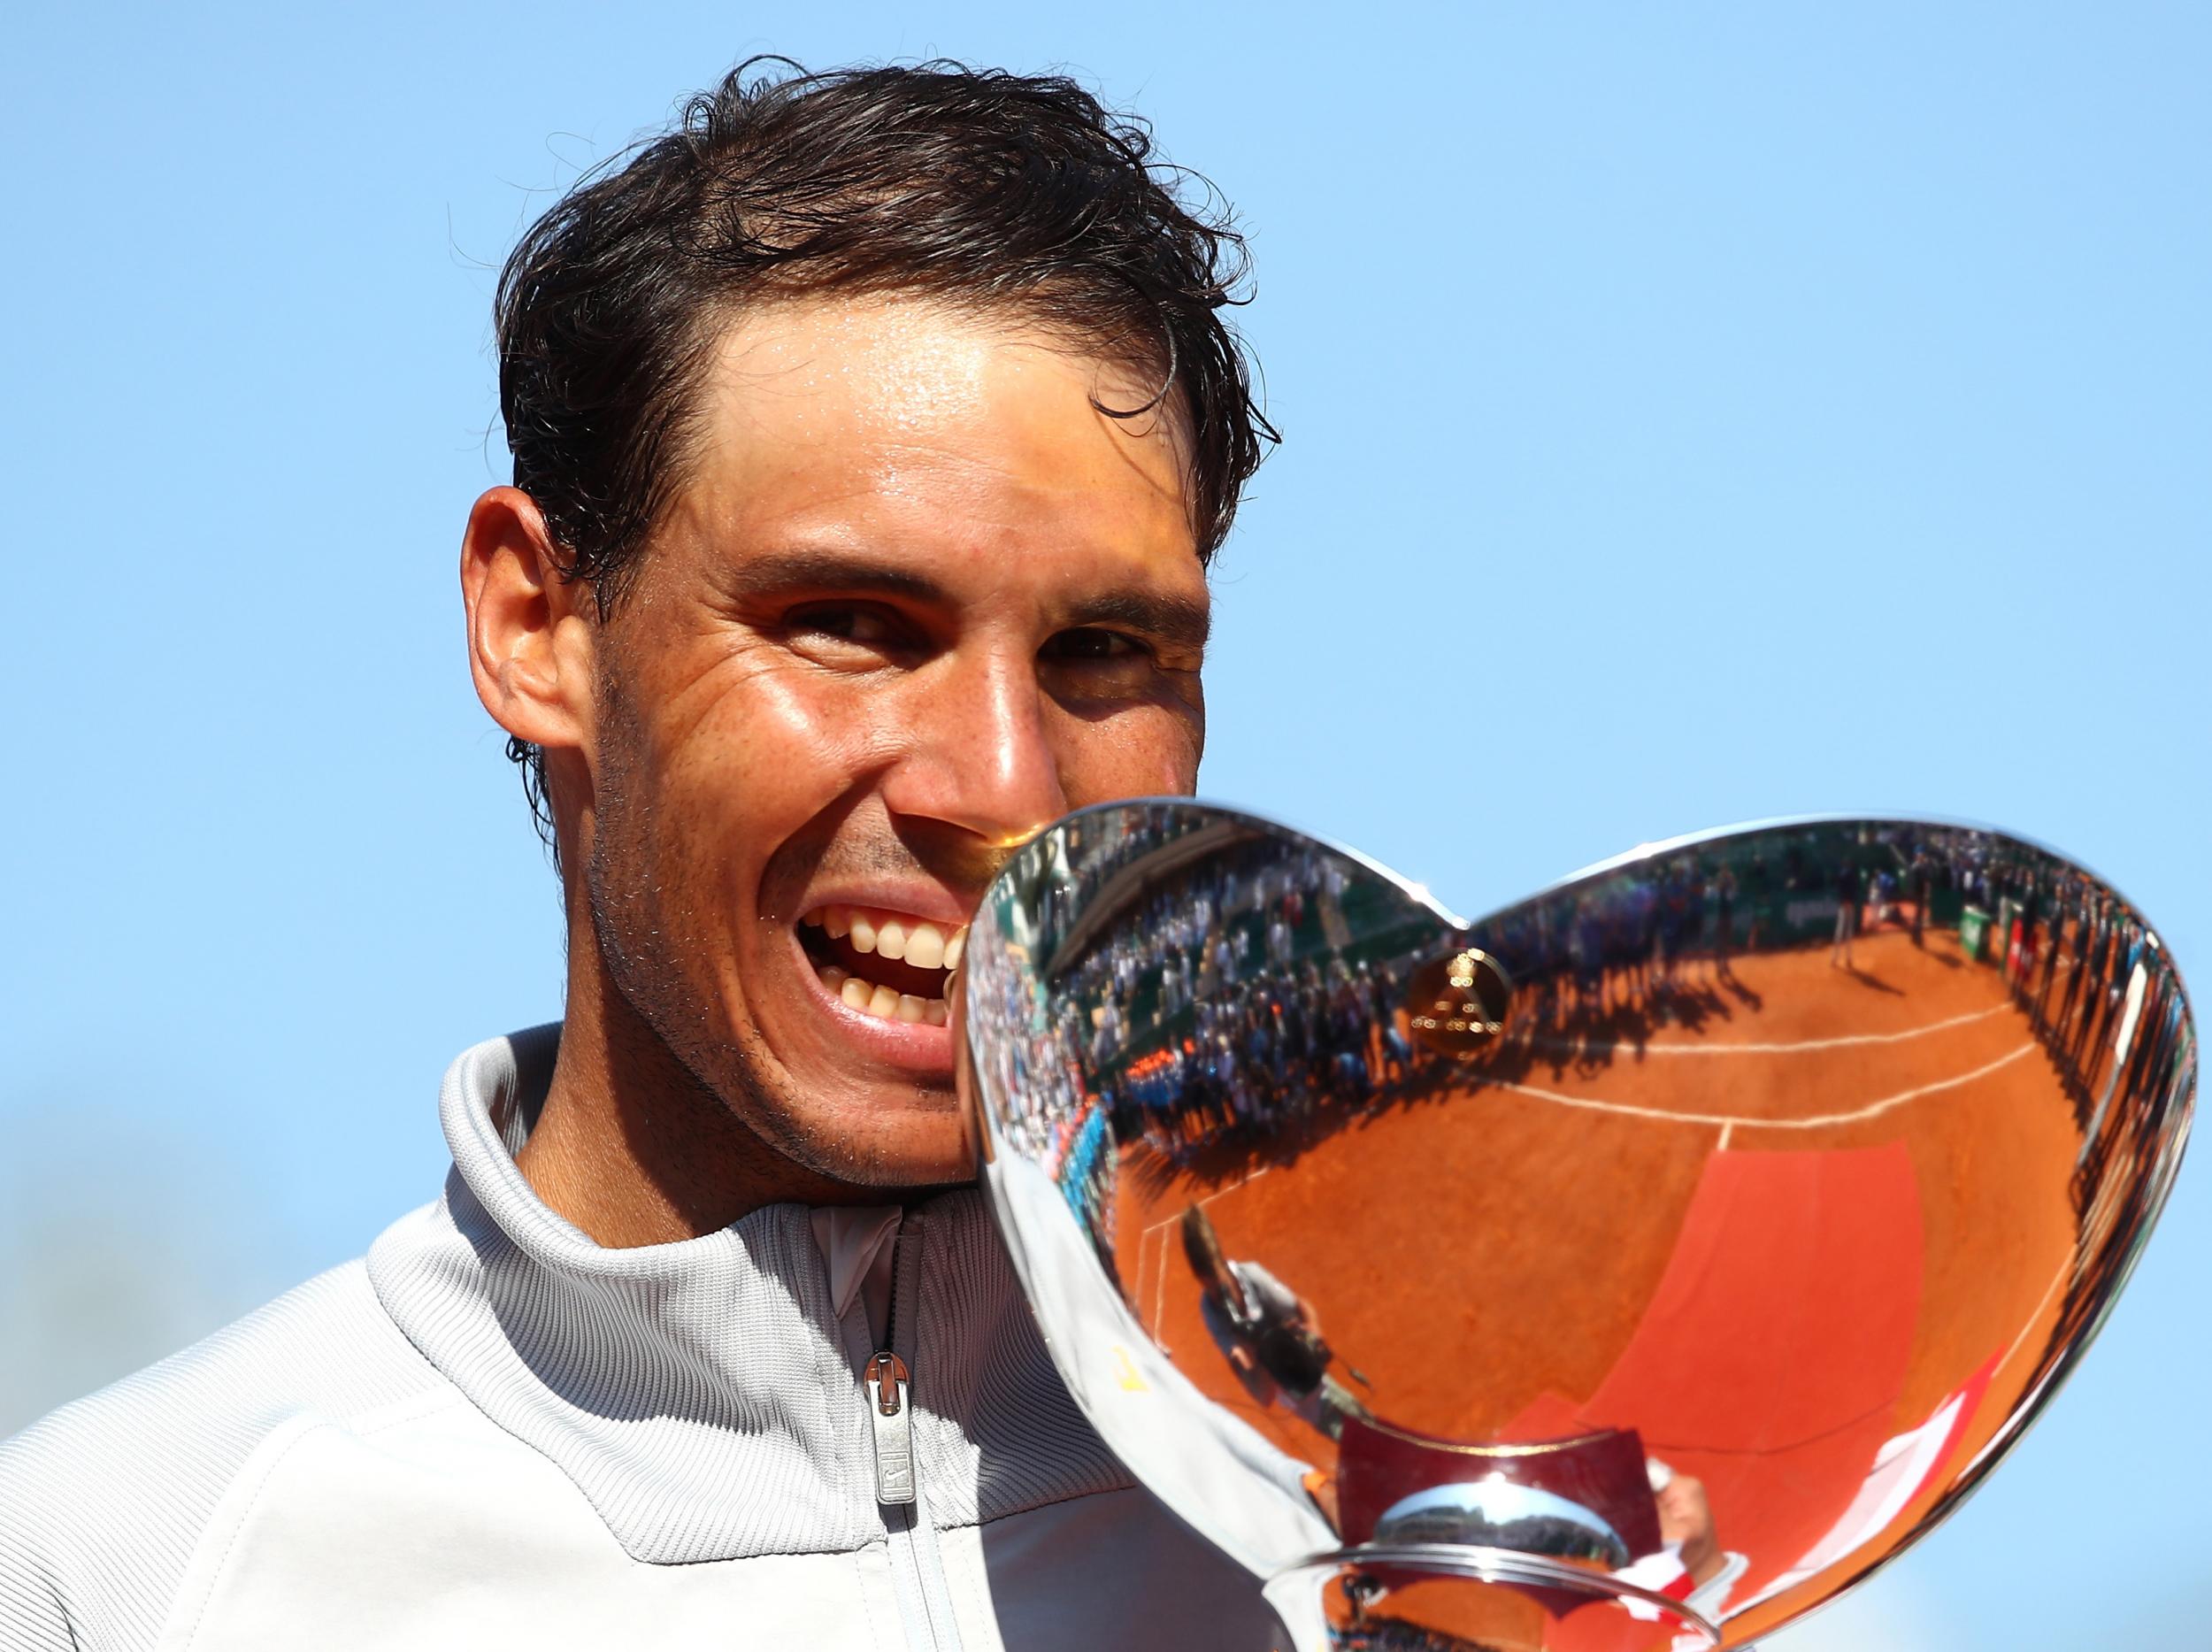 Rafa Nadal has now won the tournament eleven times